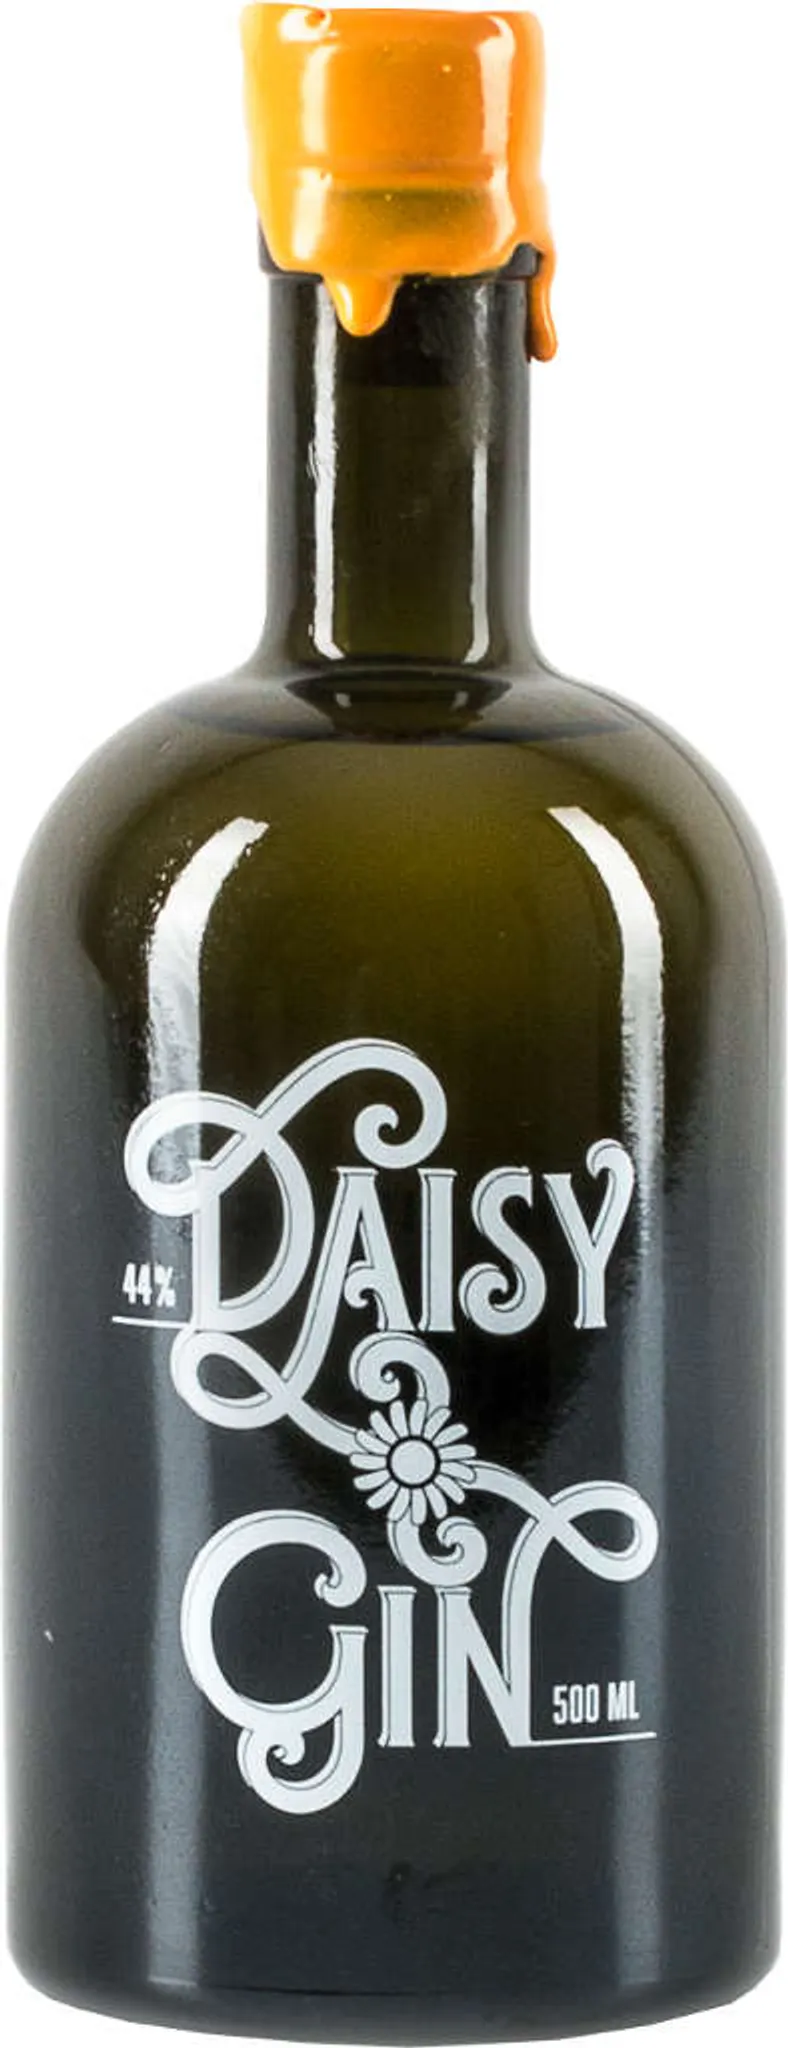 Daisy Gin - Organic London Dry Gin 44 % Gin